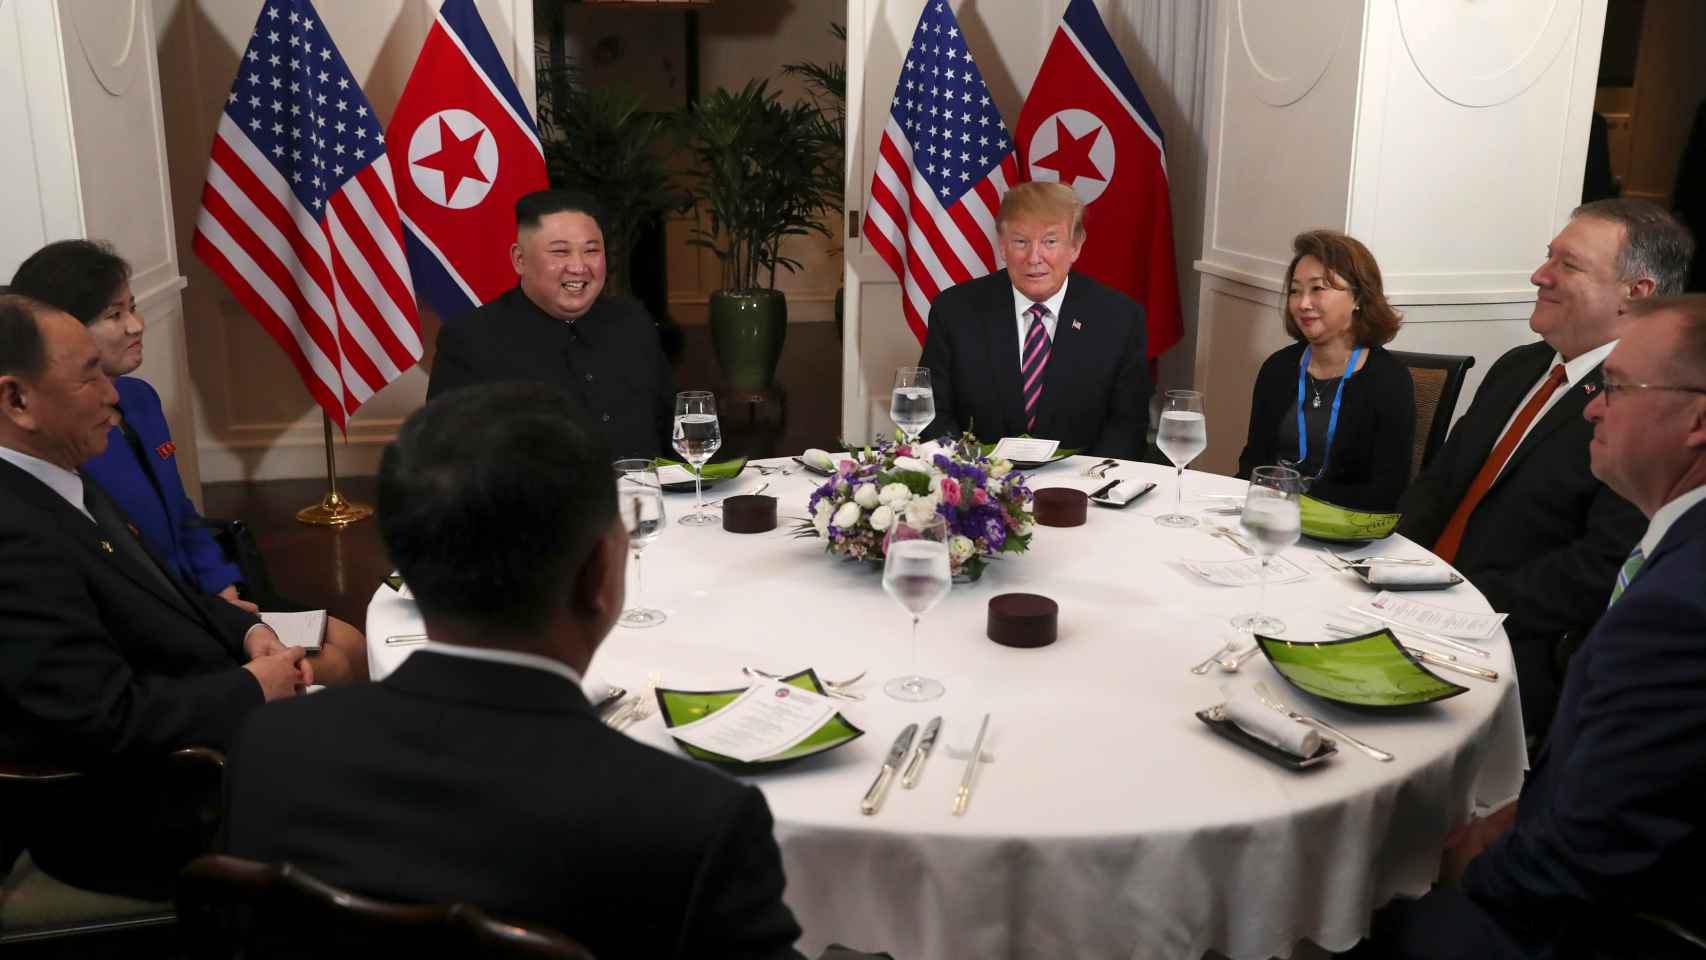 Los dos líderes junto a sus asesores, en la cena oficial.